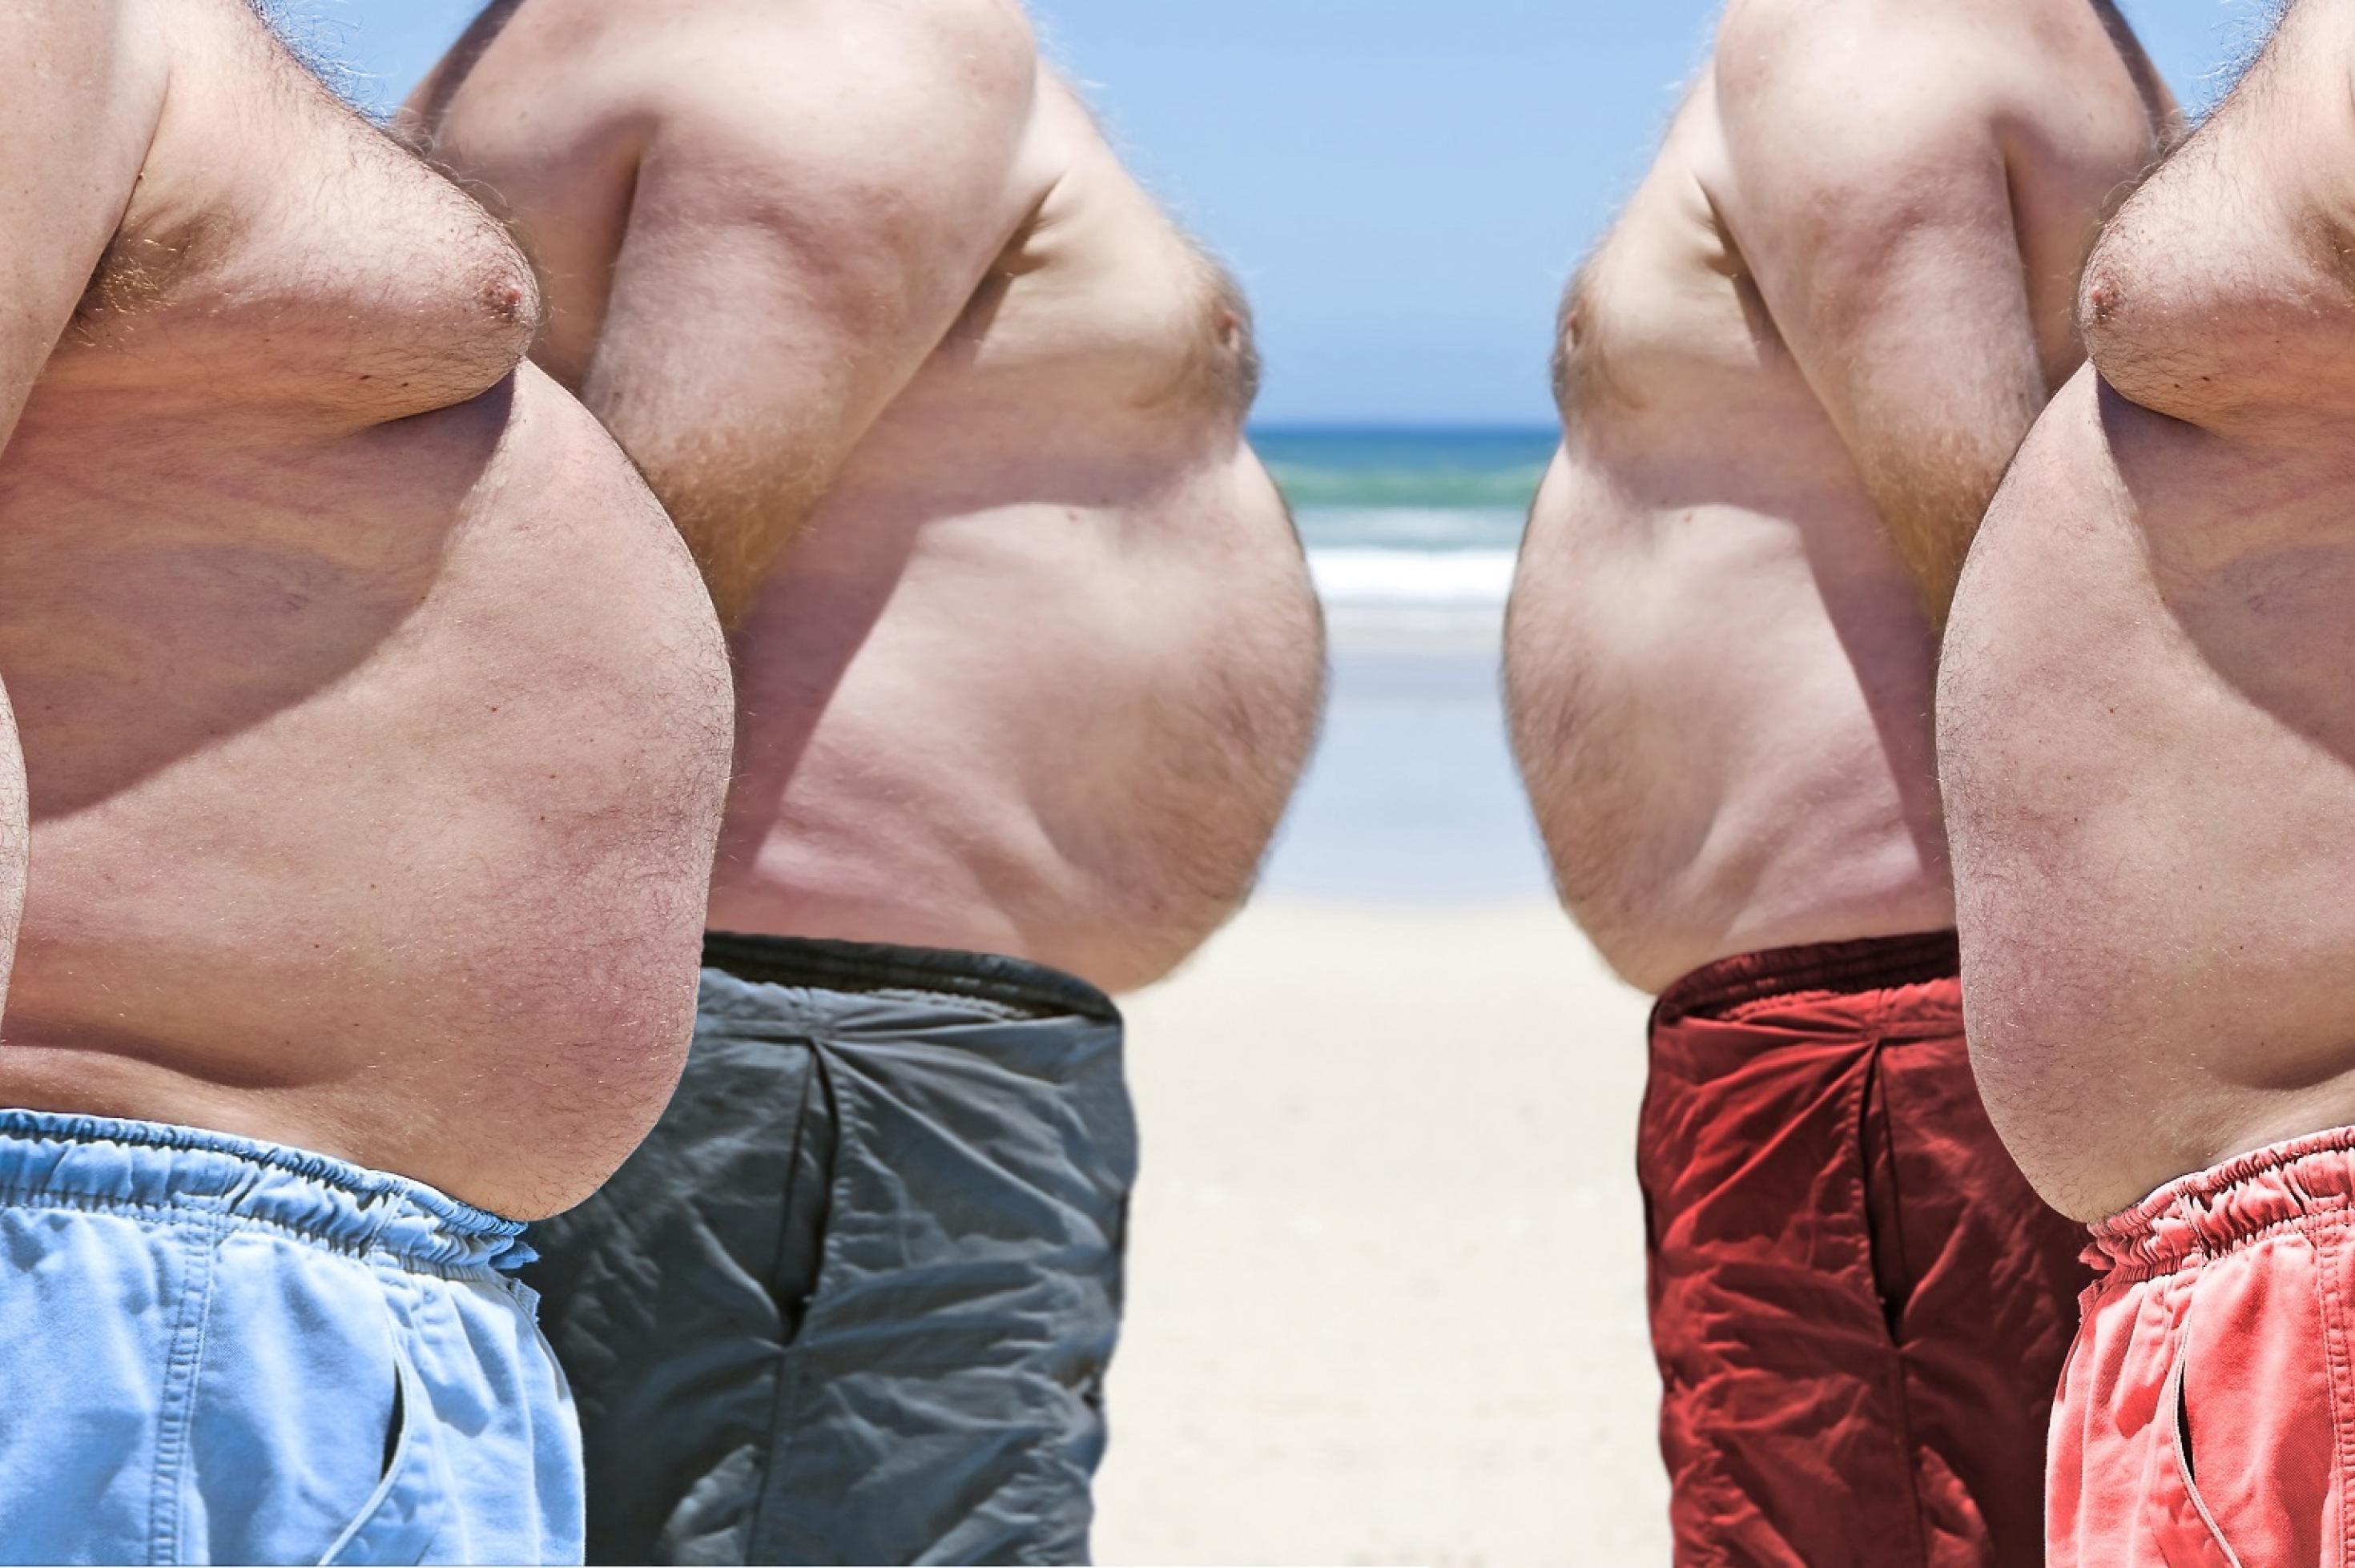 Fünf übergewichtige Männer am Strand. Es sind vor allem die auffälligen Bäuche zu sehen.